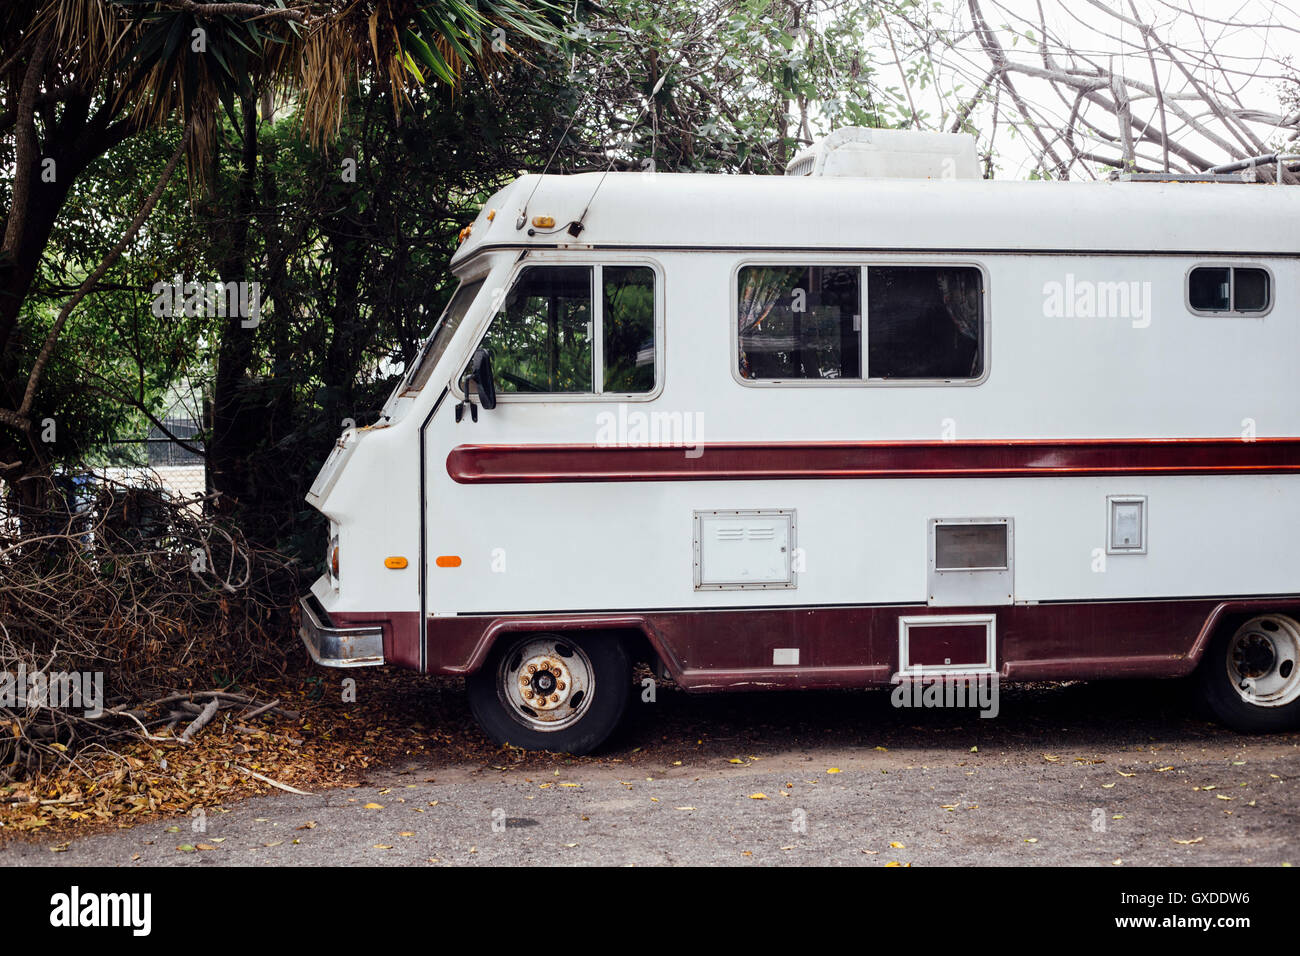 Strikt Wedstrijd Koloniaal Parked camper van, Ventura, California, USA Stock Photo - Alamy